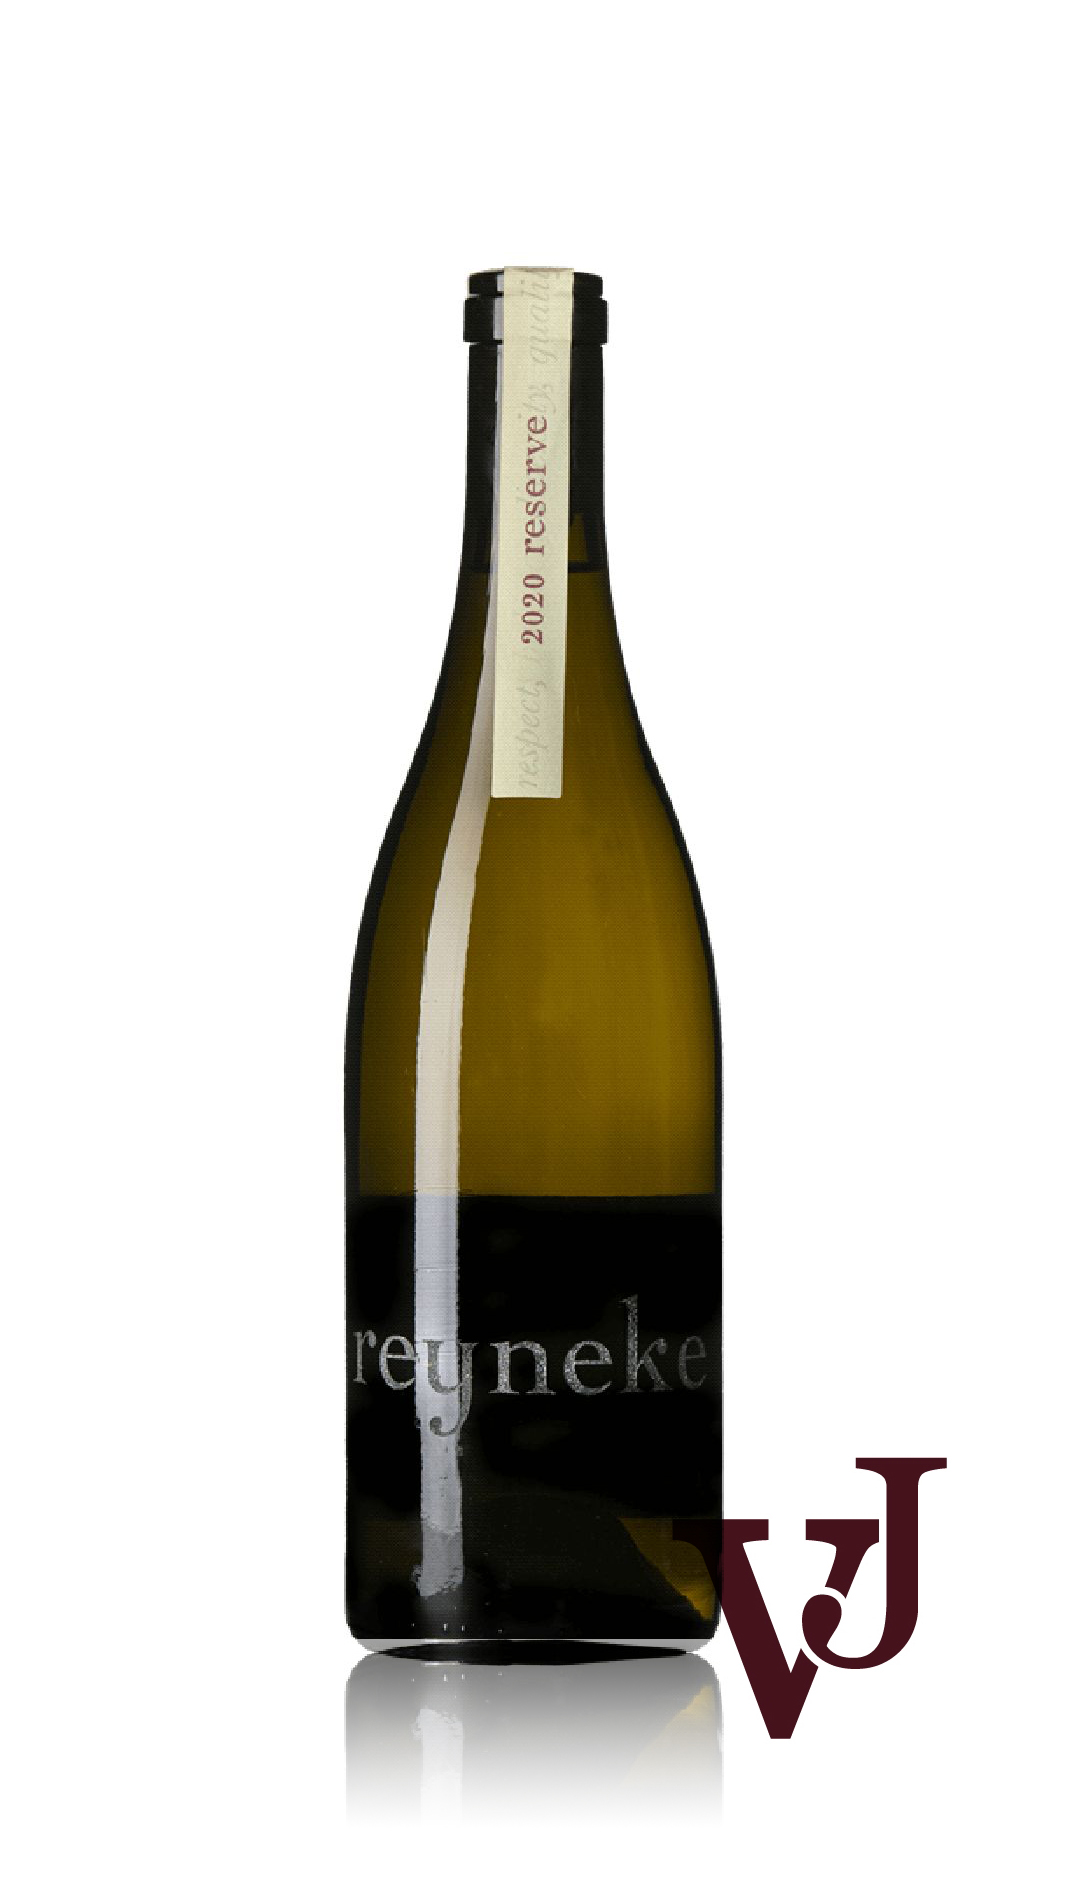 Vitt Vin - Reyneke Reserve White 2020 artikel nummer 9323101 från producenten Reyneke Winery från området Sydafrika